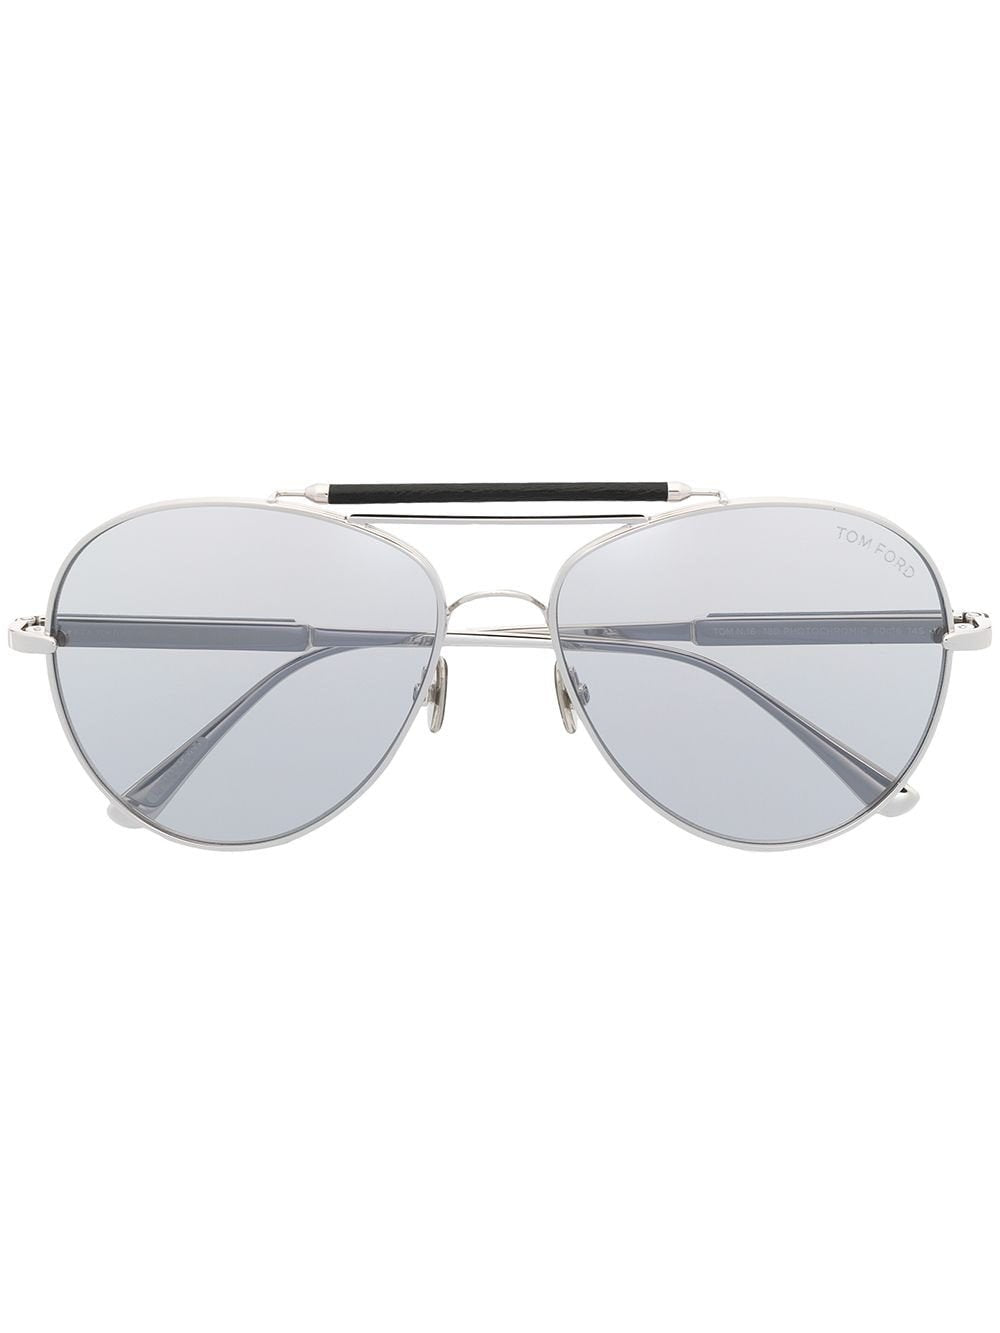 TOM FORD FT0704P Titanium Sunglasses - Andre Opticas